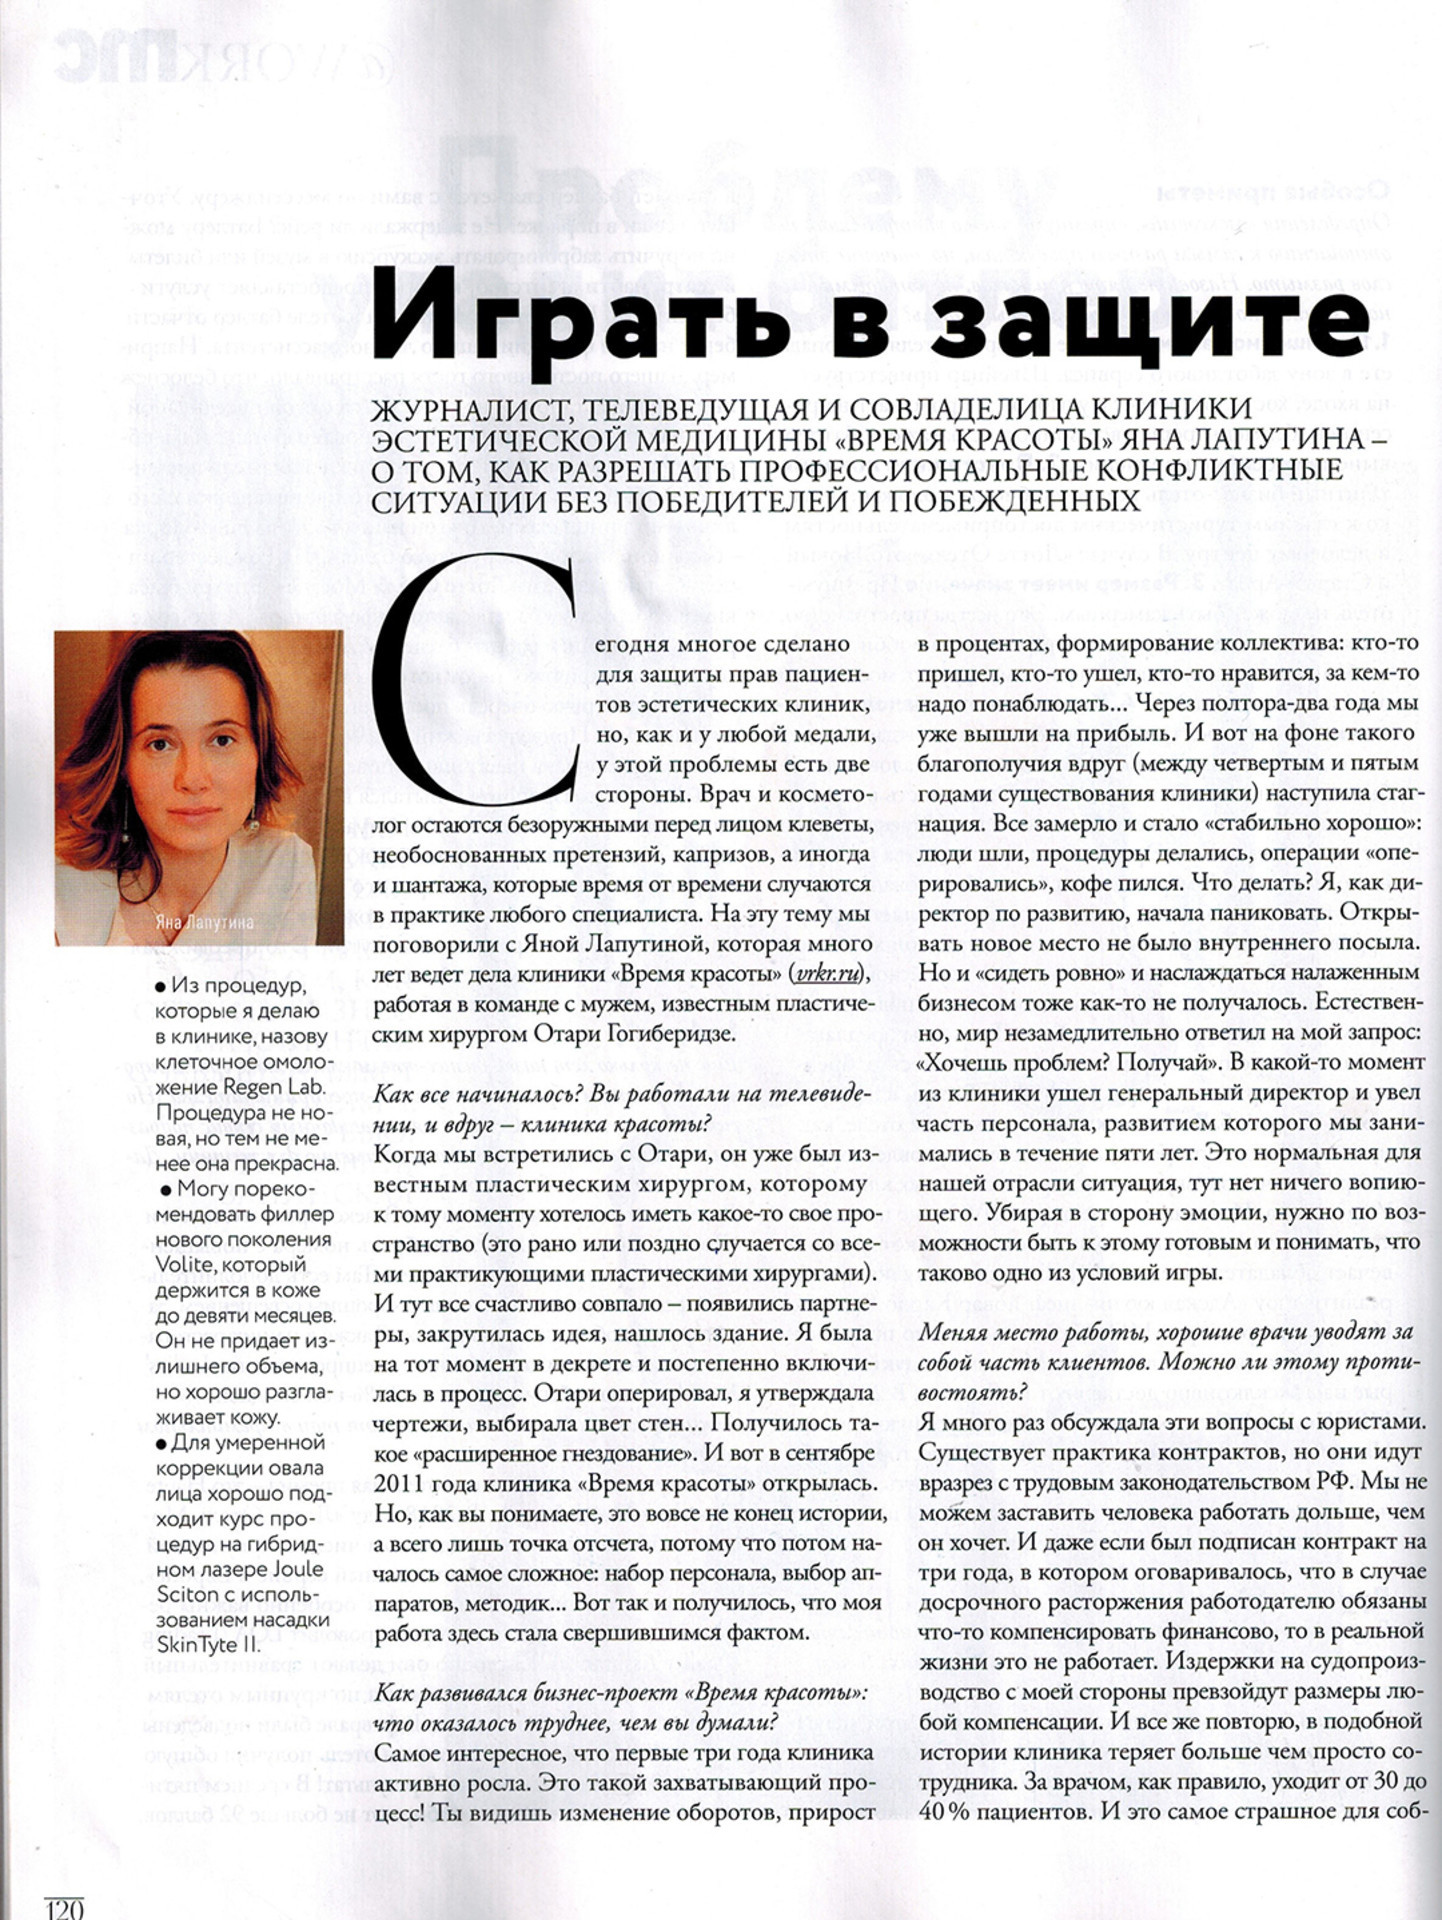 Журнал Marie Claire о клинике Время Красоты